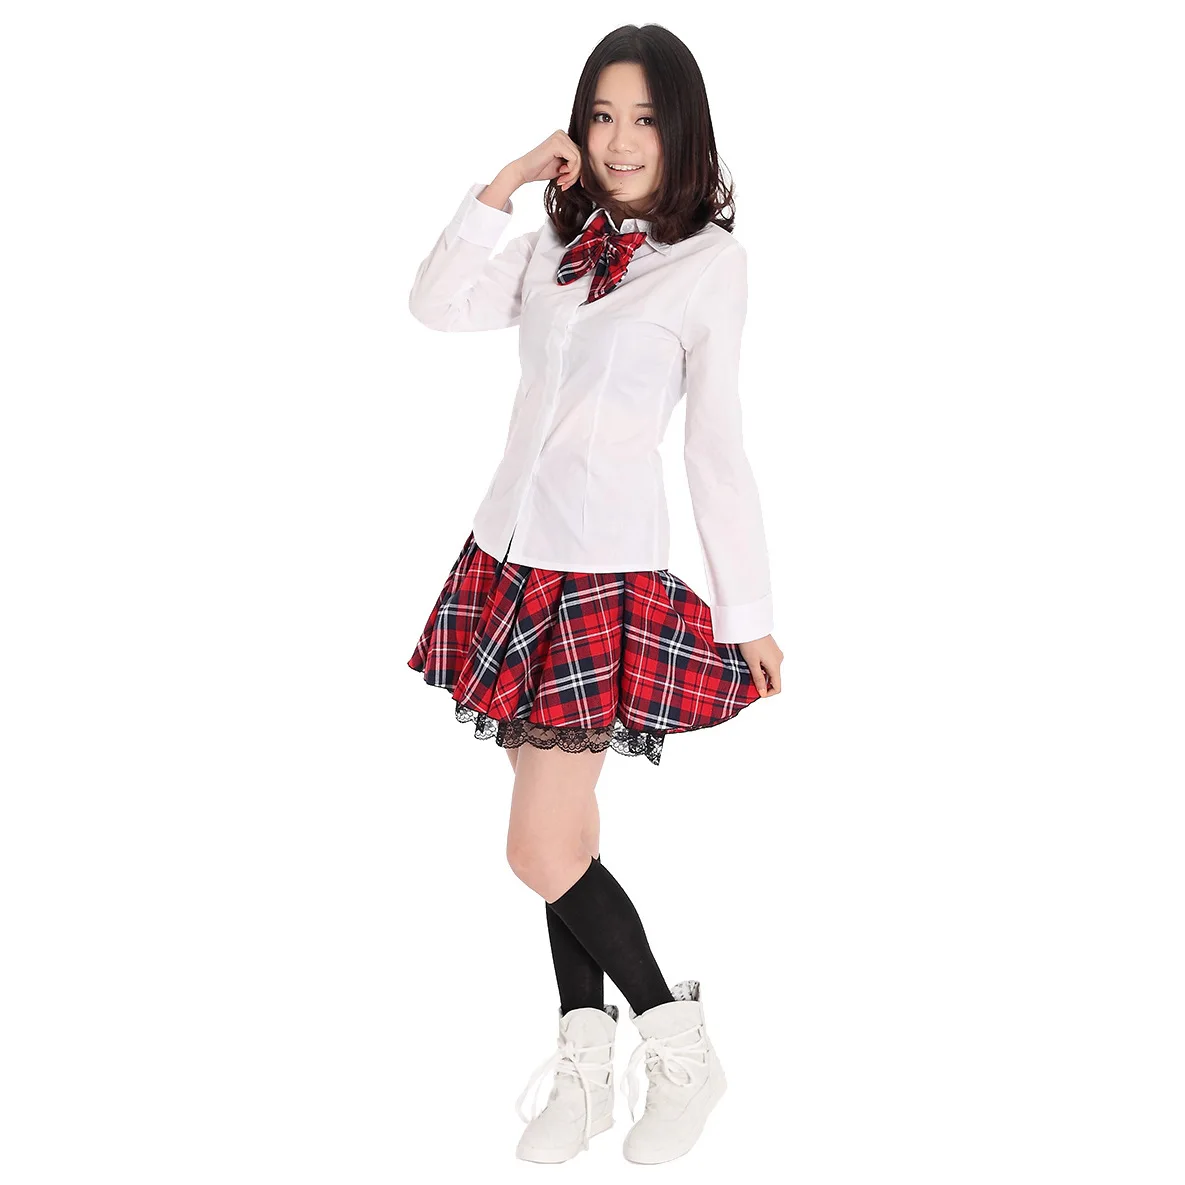 Японский Школьная униформа для девочек клетчатая юбка в складку студентов Школьная Униформа мини кружева юбки плюс Размеры XXXL одежда